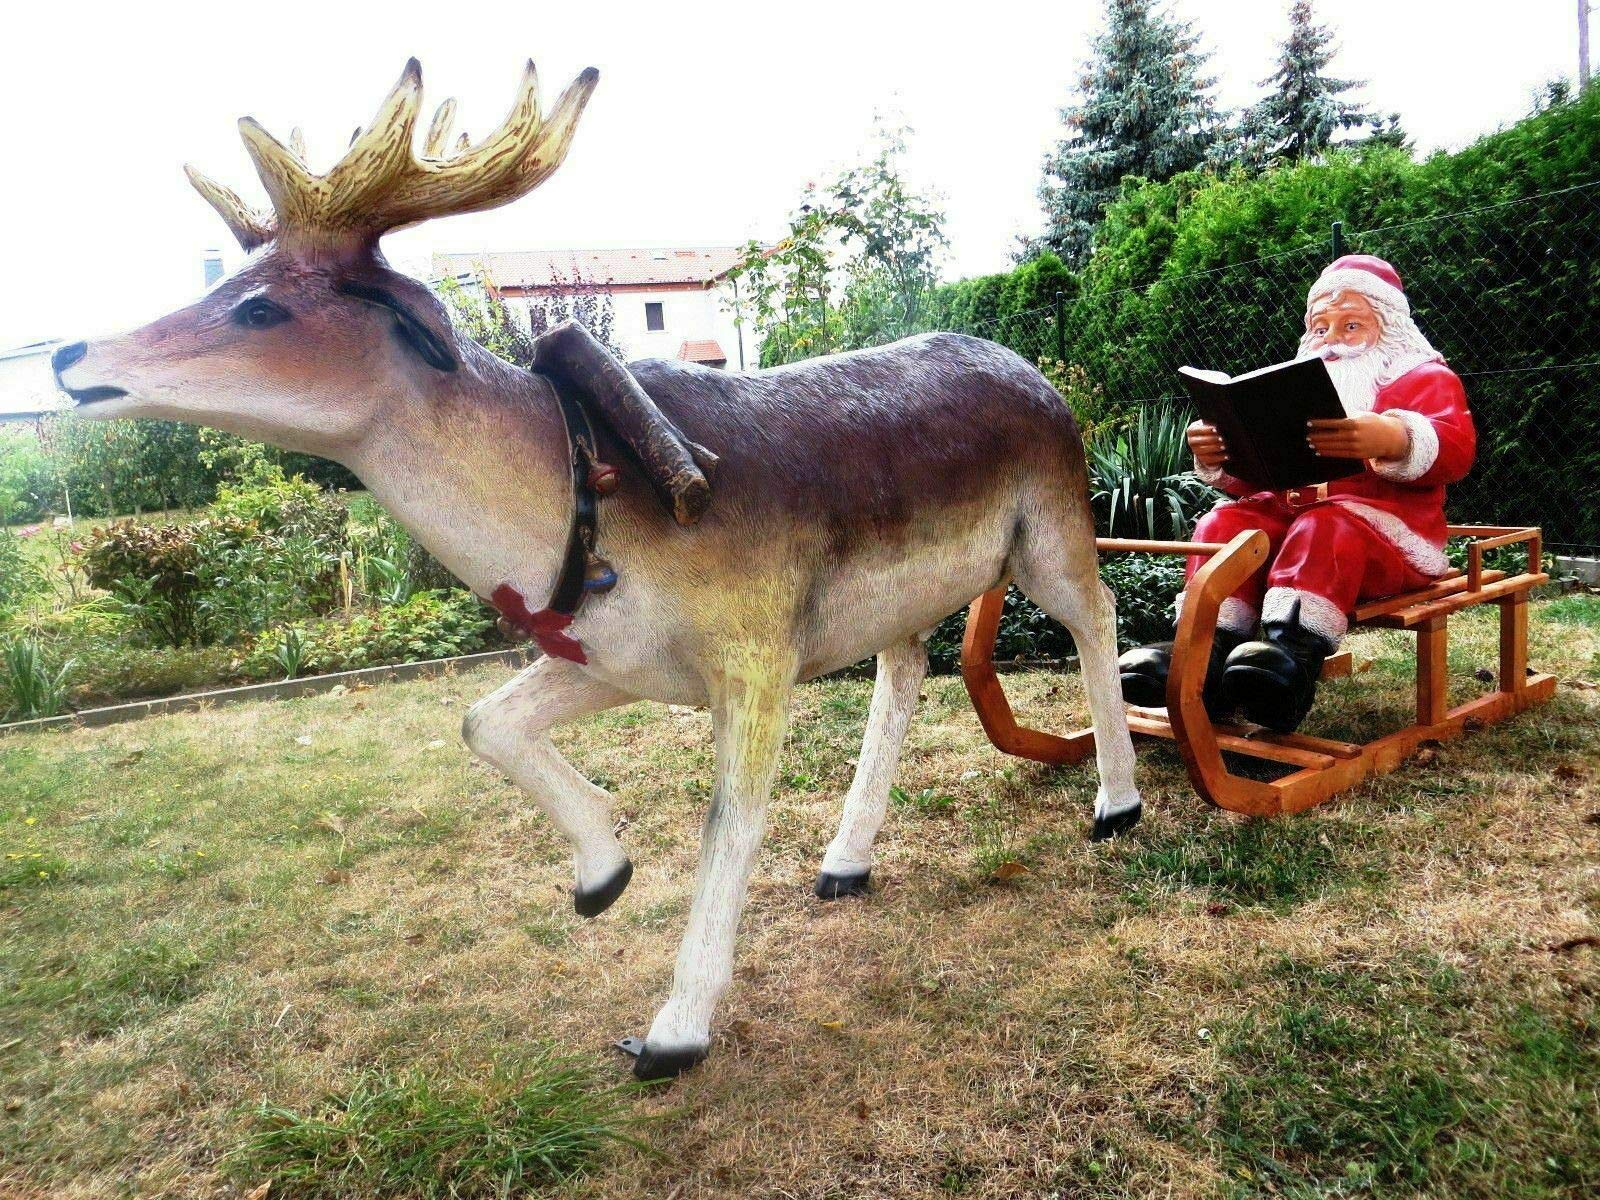 DEKO VERTRIEB BAYERN XXL Rentier+Schlitten+Weihnachtsmann lebensgross 2,80m lang Weihnachtsdeko Santa